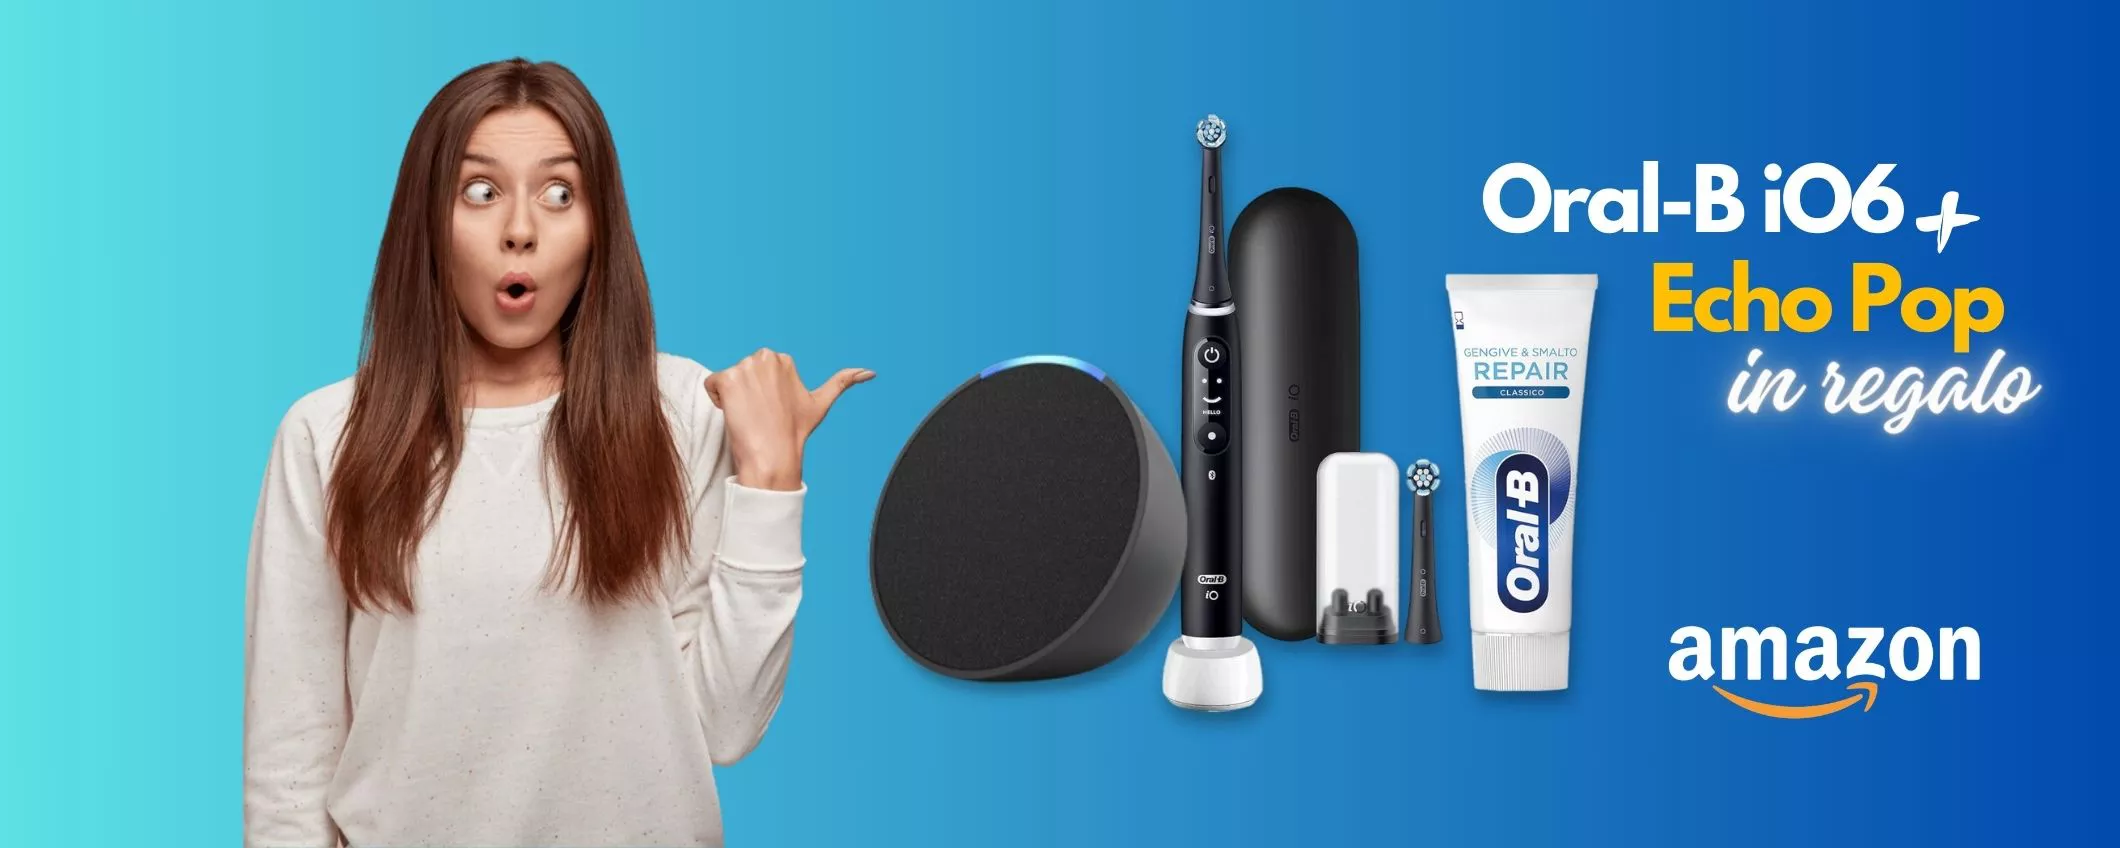 Lo spazzolino elettrico Oral-B ti regala Echo Pop con Alexa: scopri l'offerta